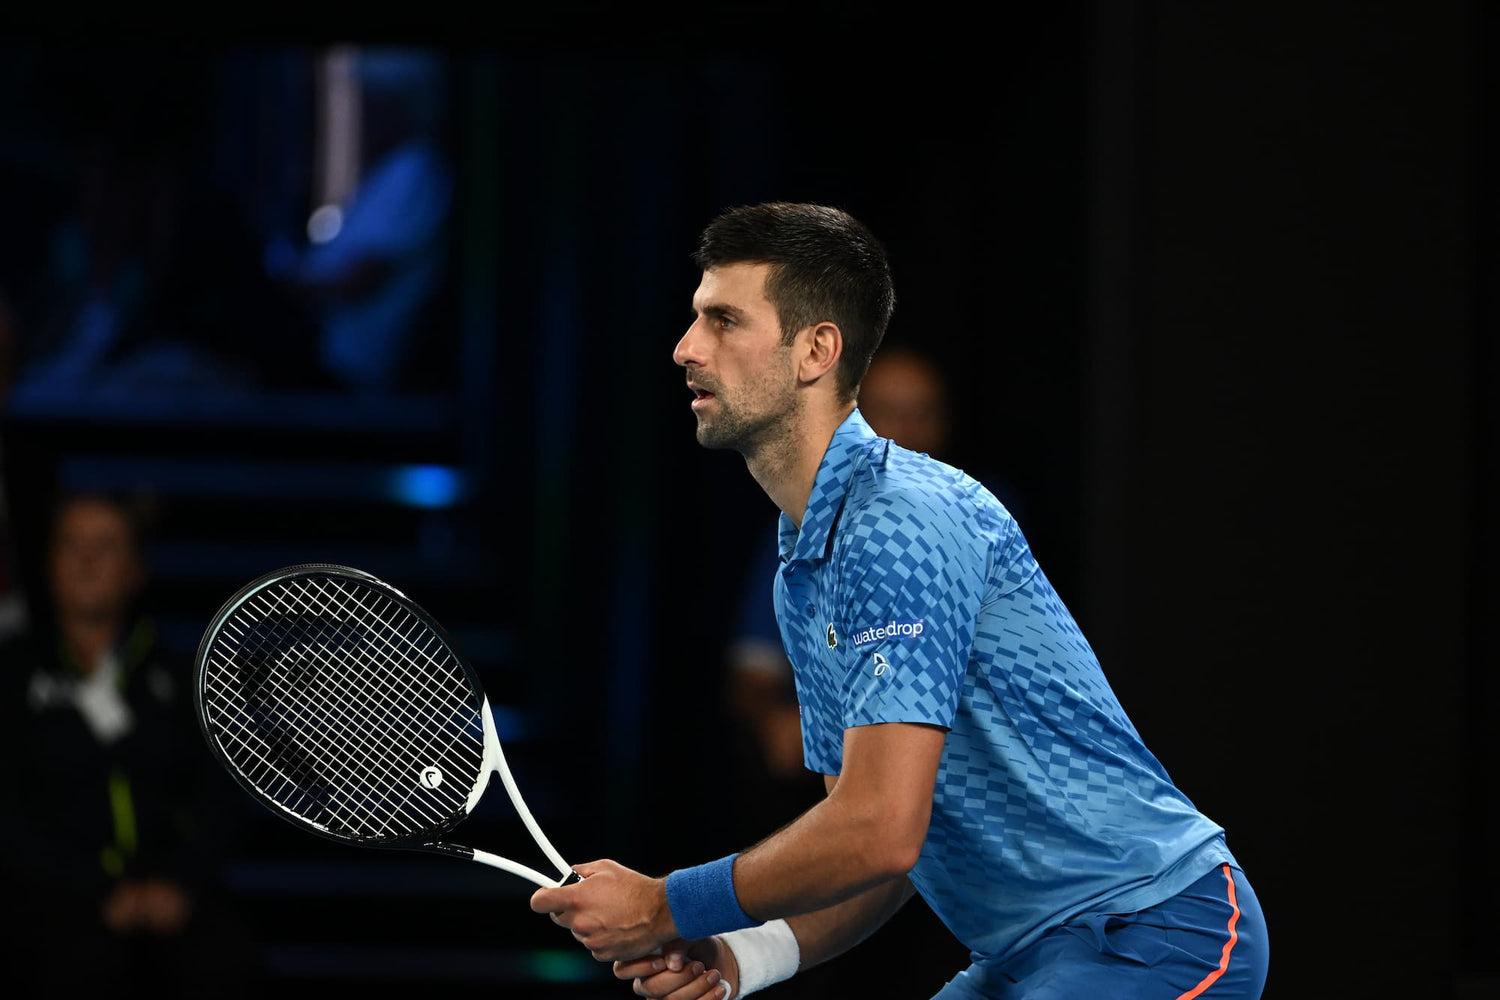 Novak Djokovic wearing shirt with waterdrop logo